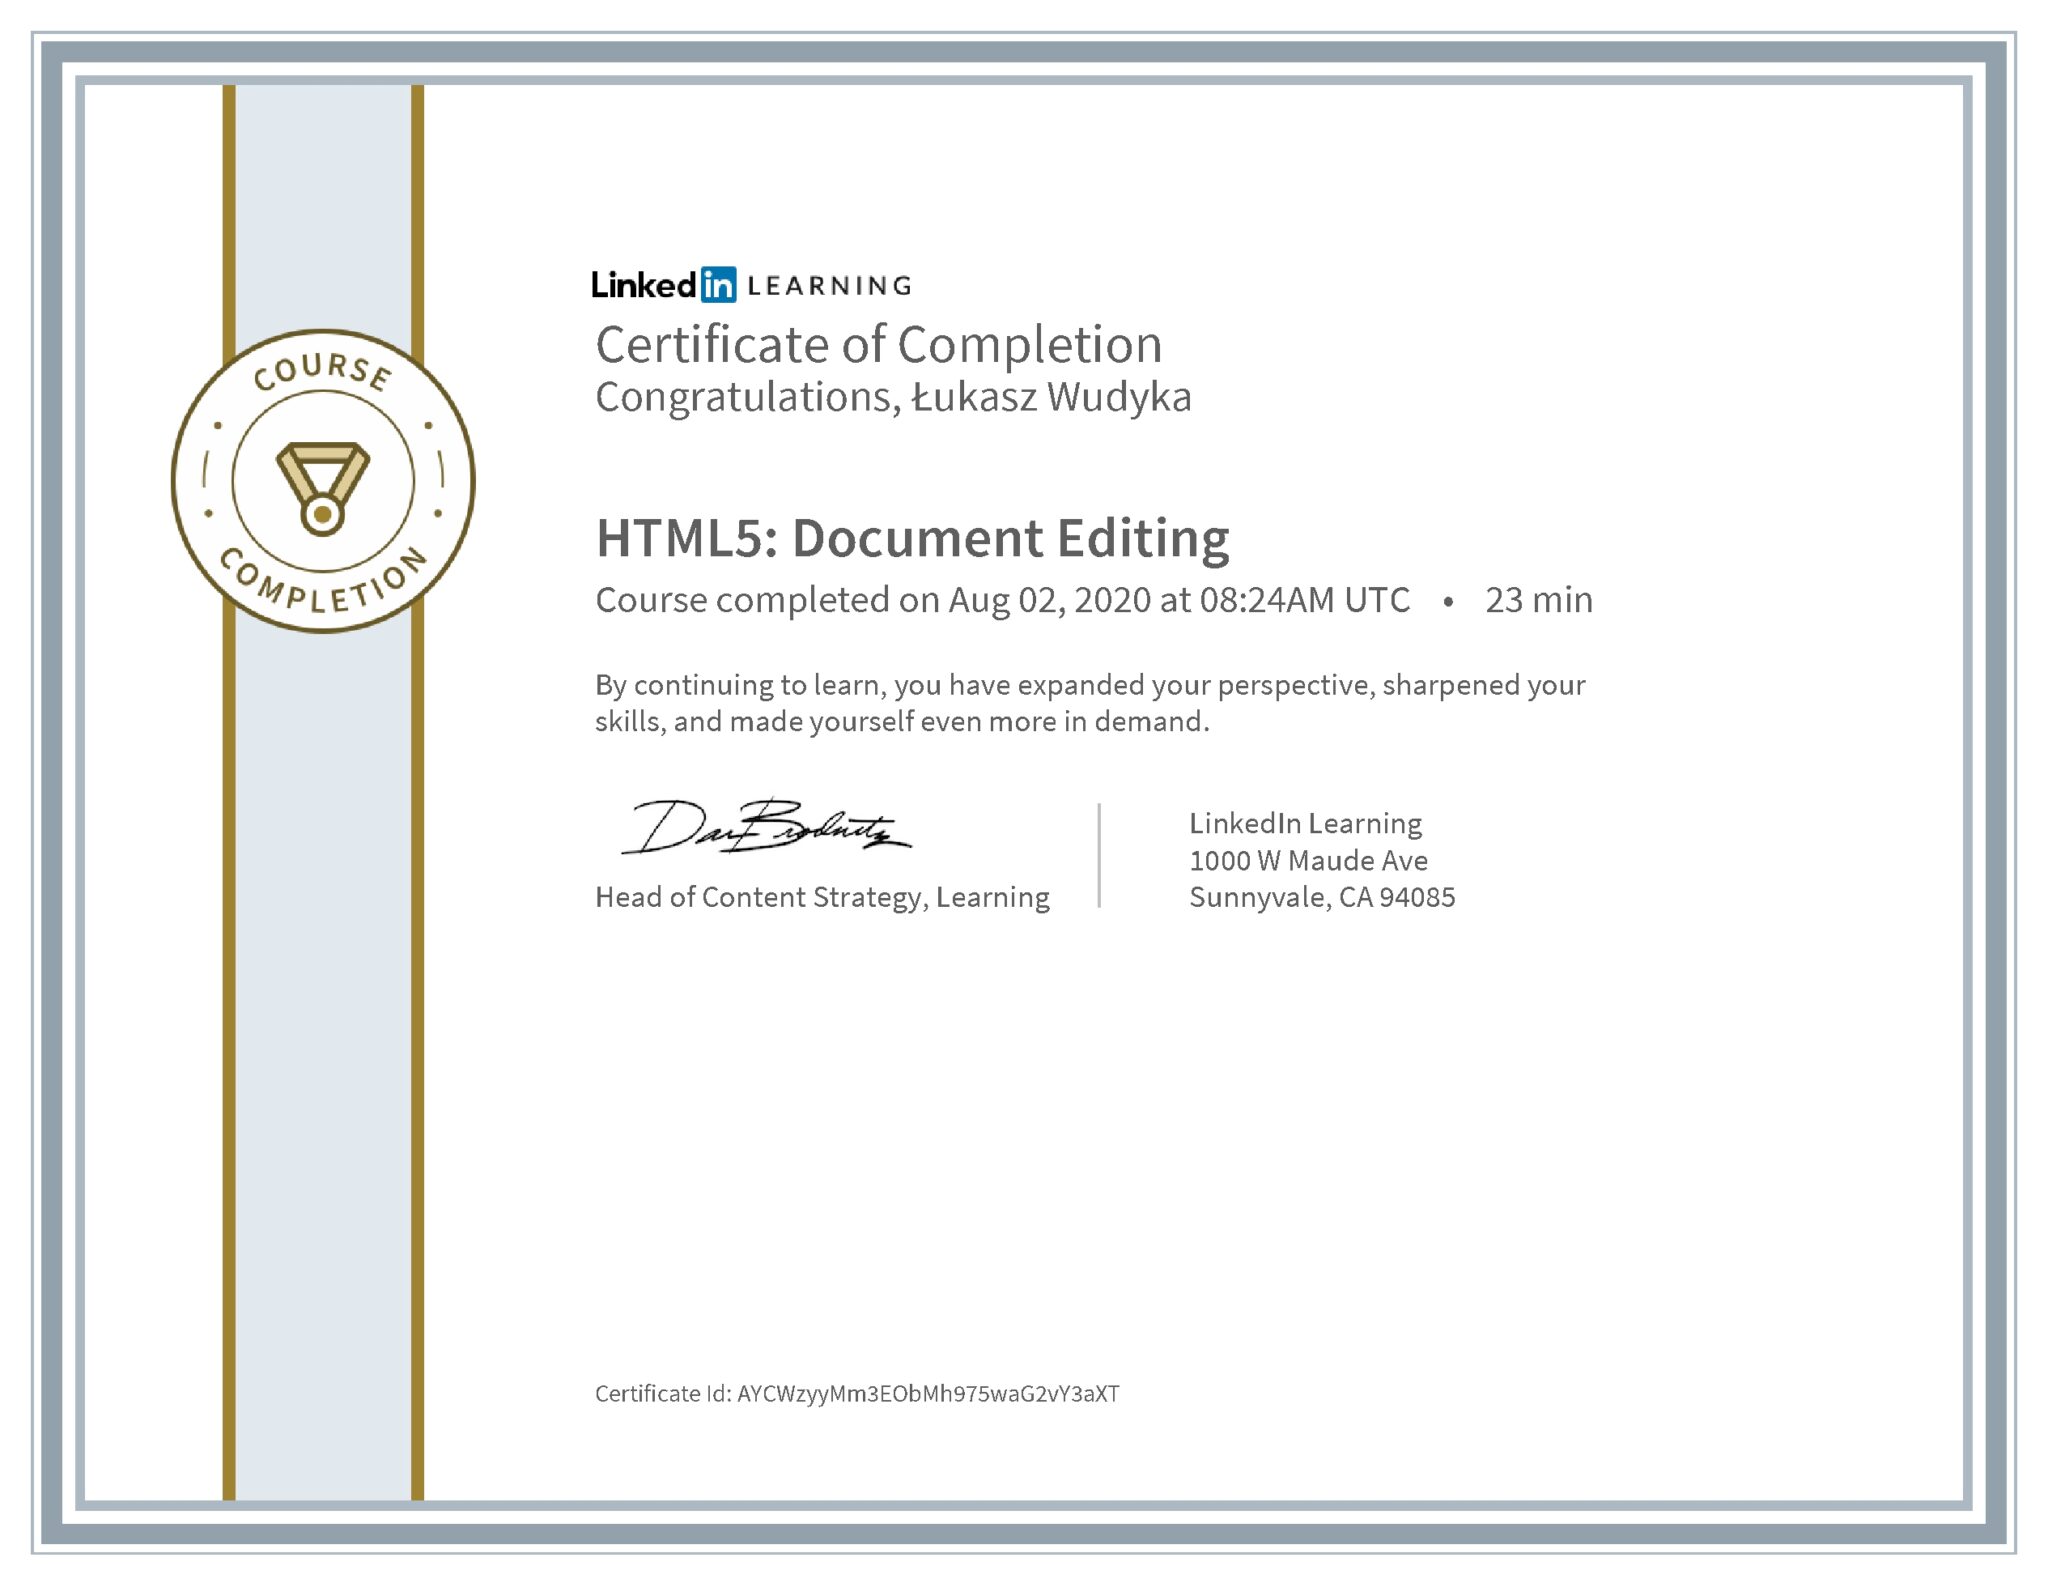 Łukasz Wudyka certyfikat LinkedIn HTML5: Document Editing